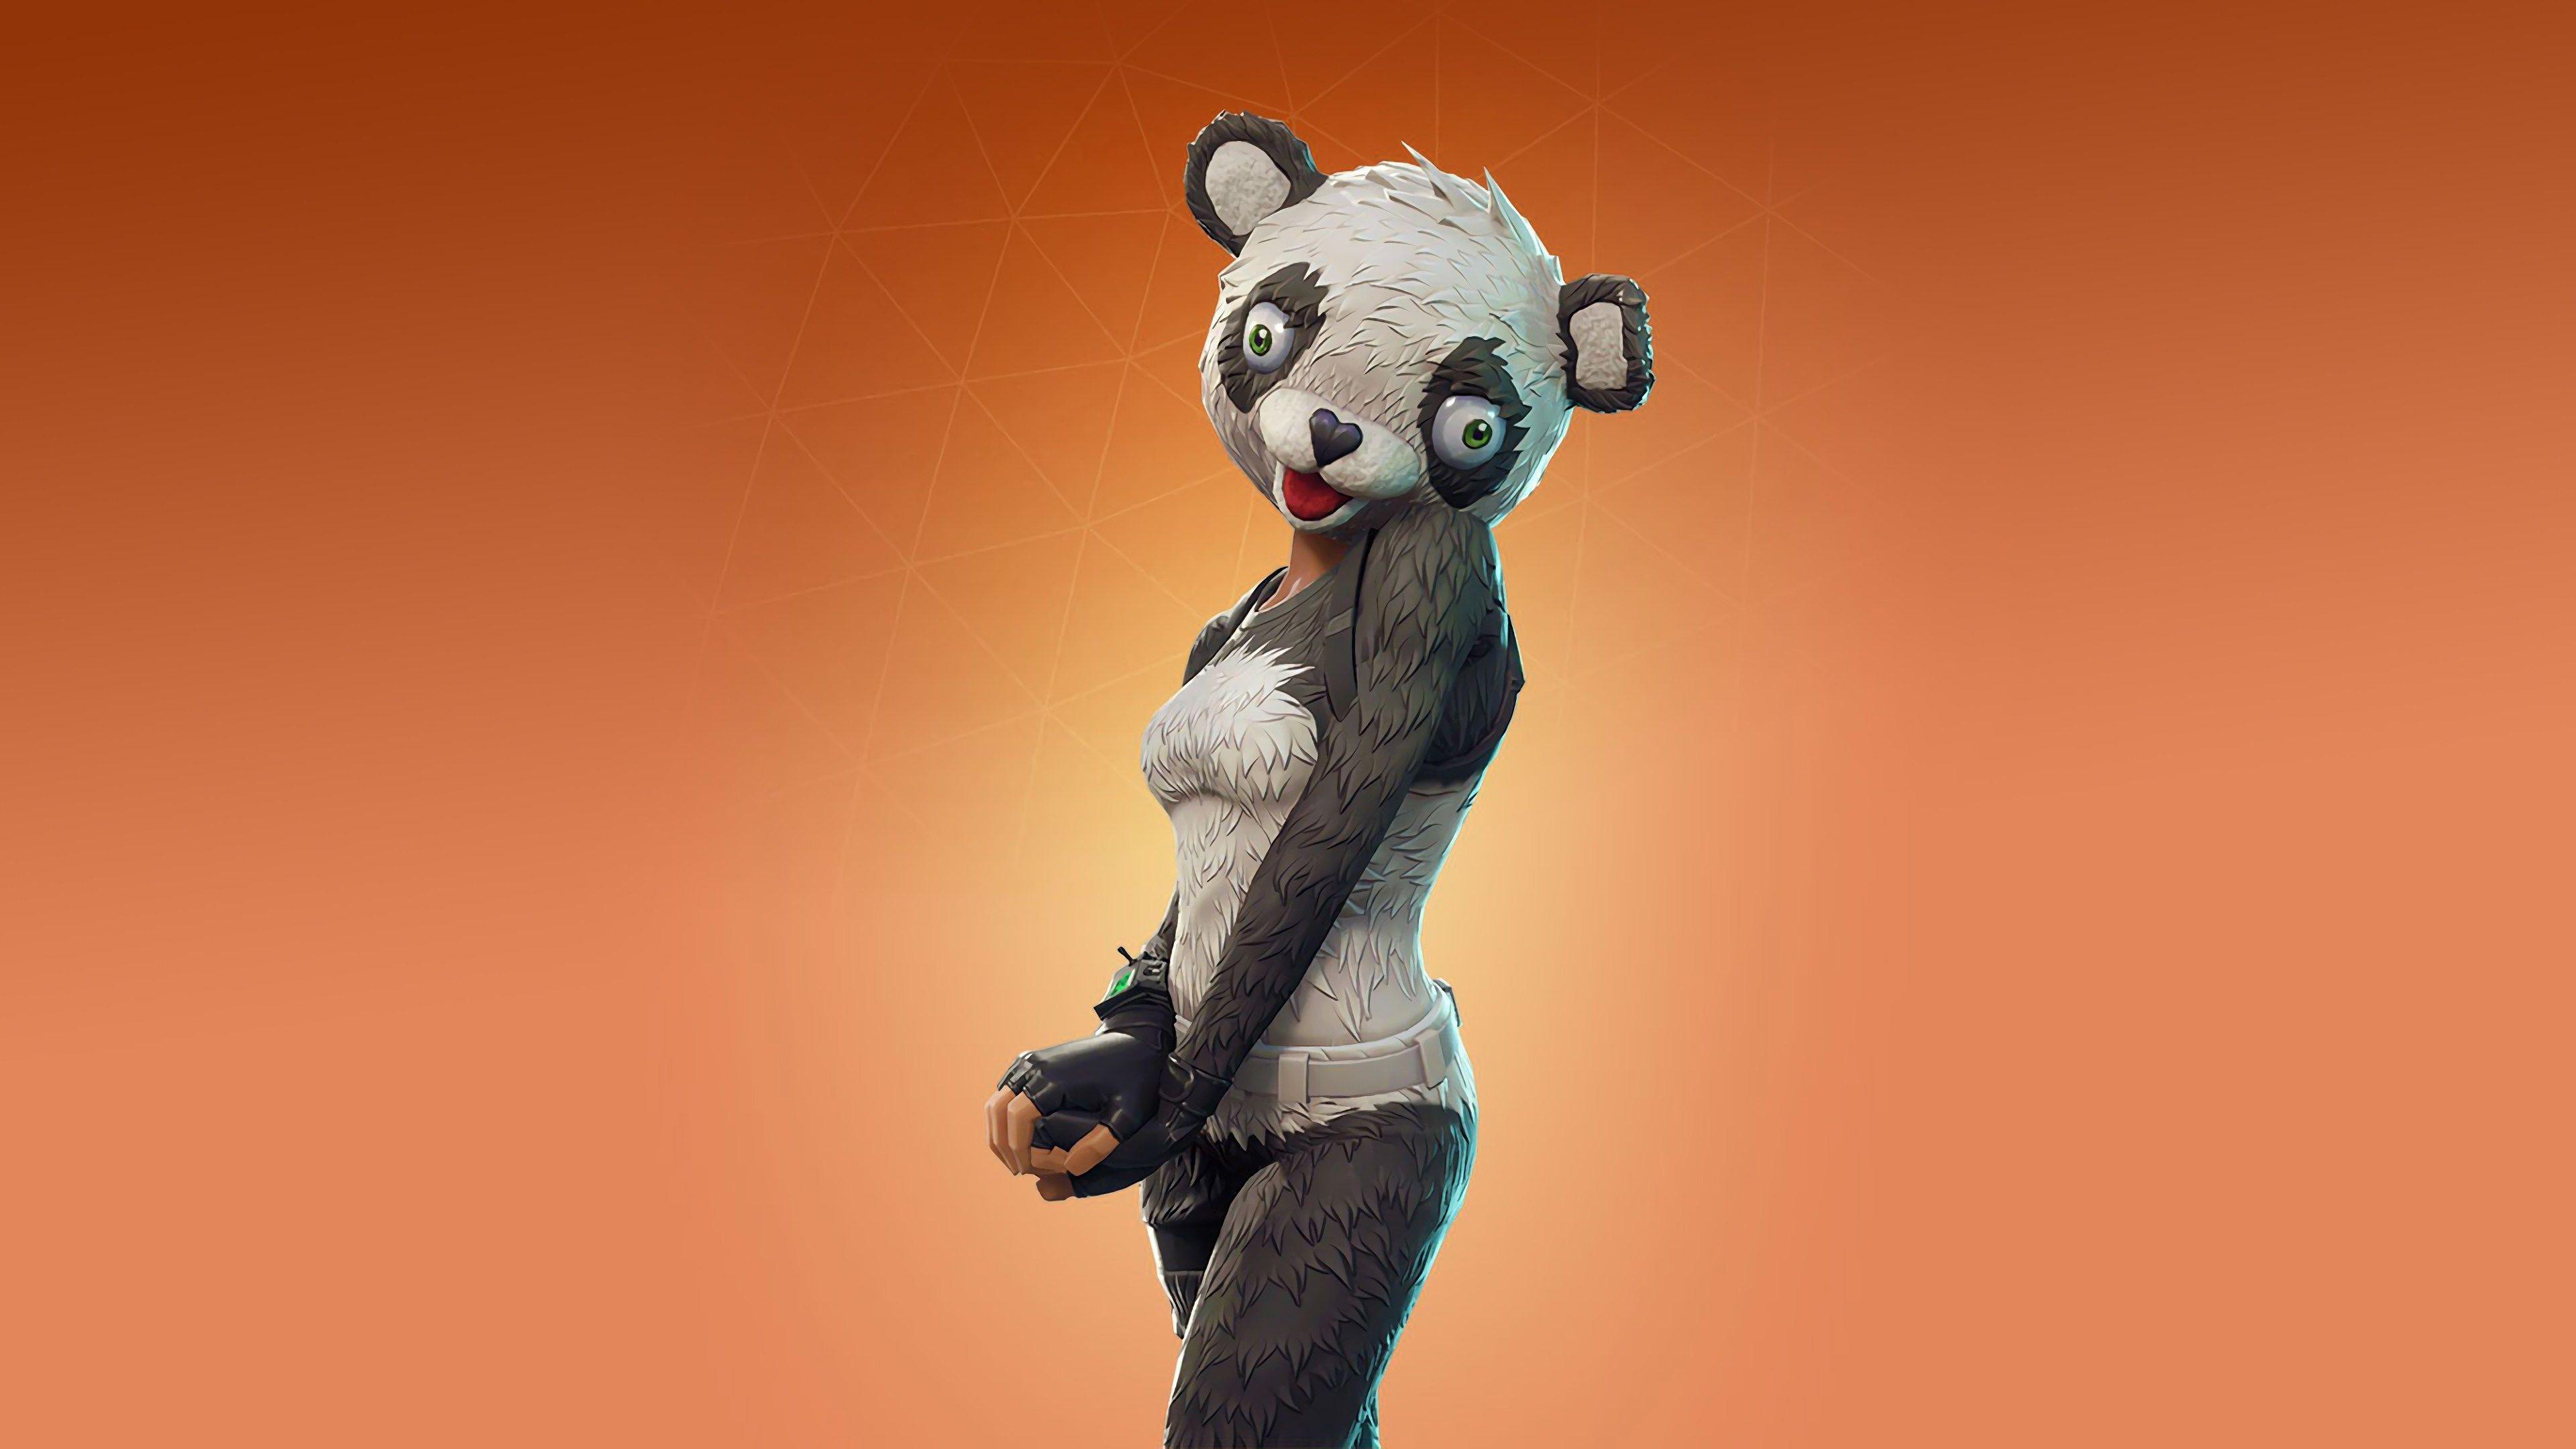 Fortnite Wallpaper Panda Team Leader